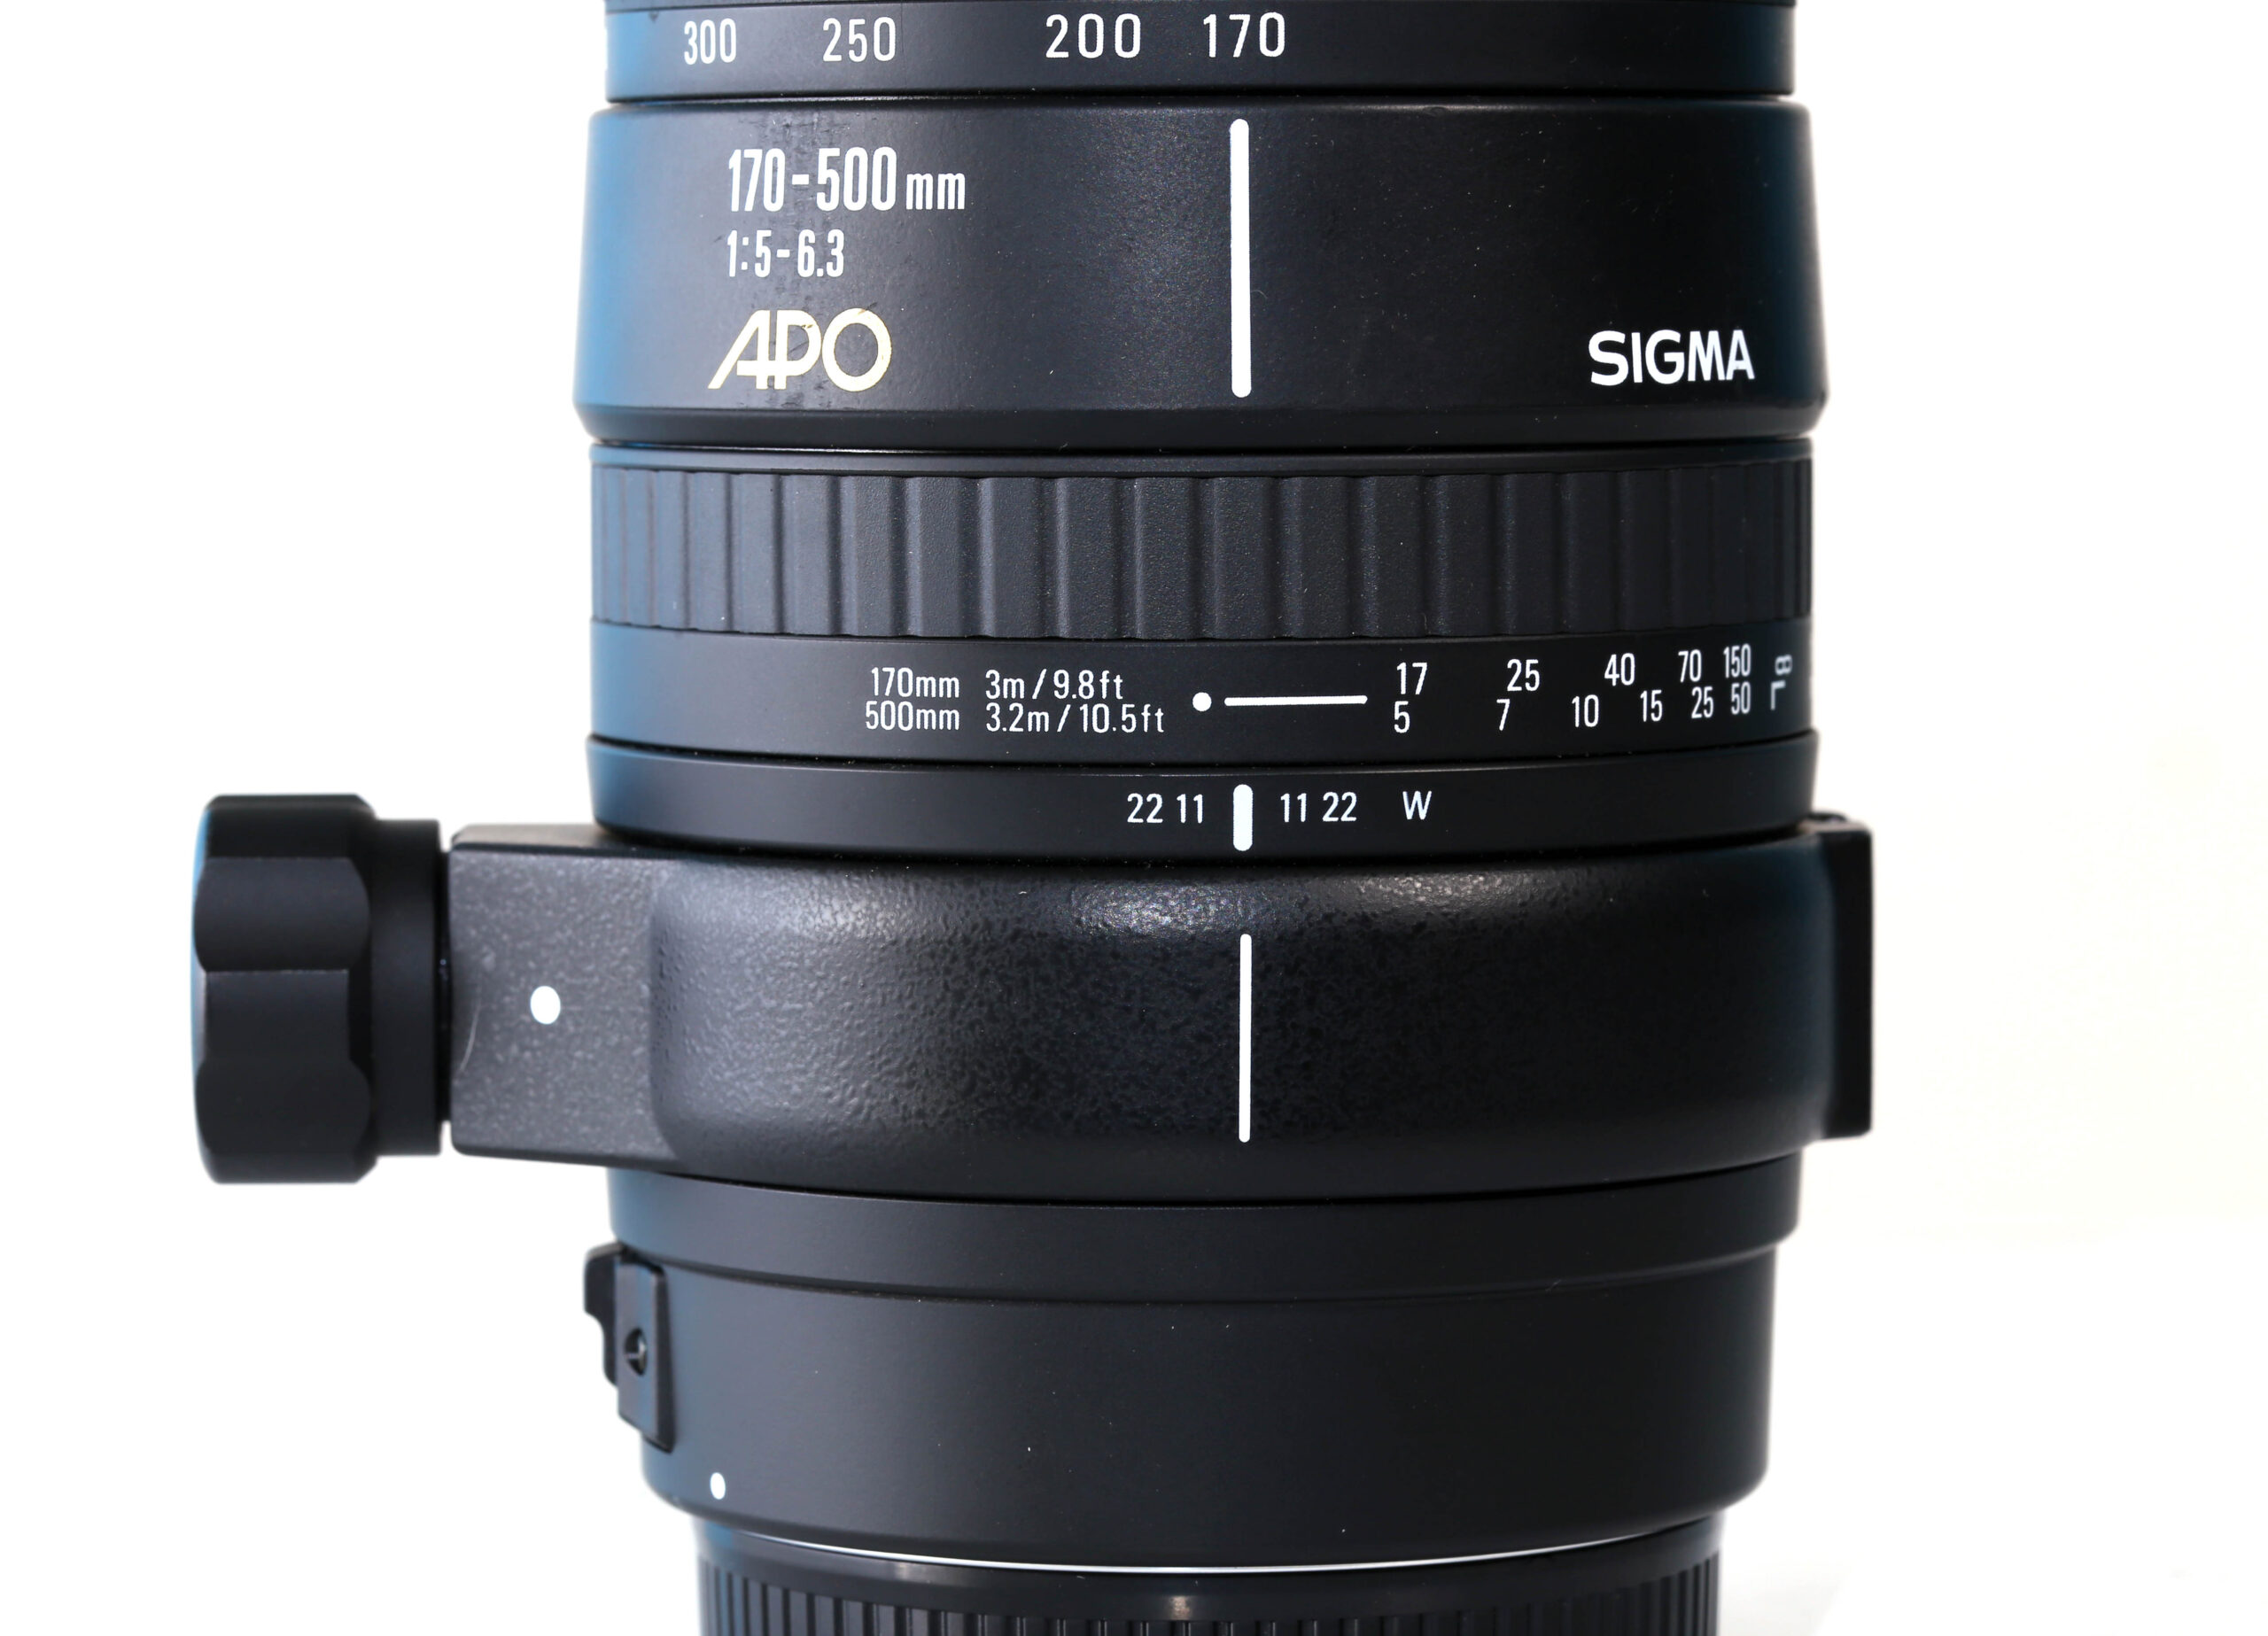 SIGMA APO 170-500mm F5-6.3 For CANON